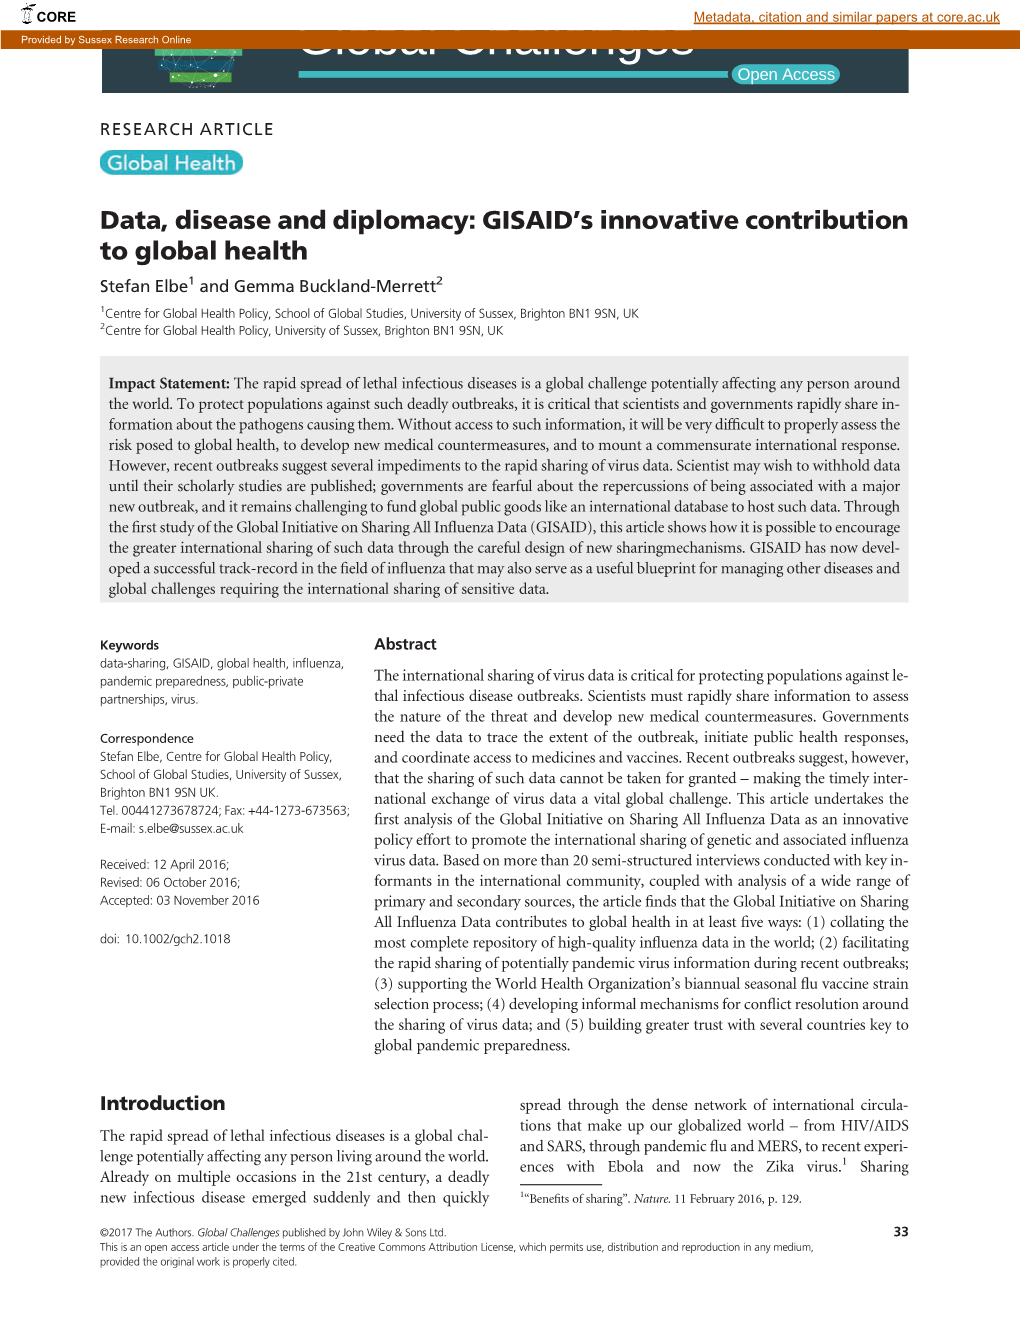 GISAID's Innovative Contribution to Global Health